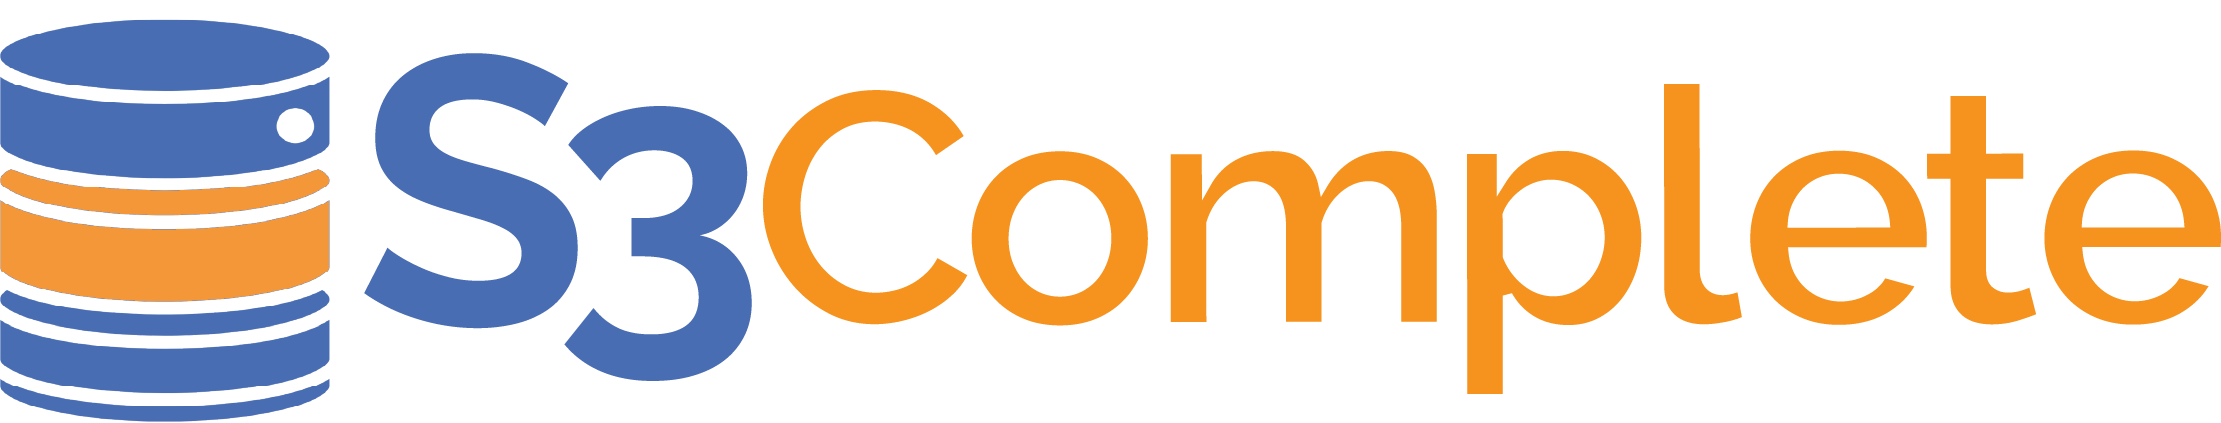 S3Complete logo